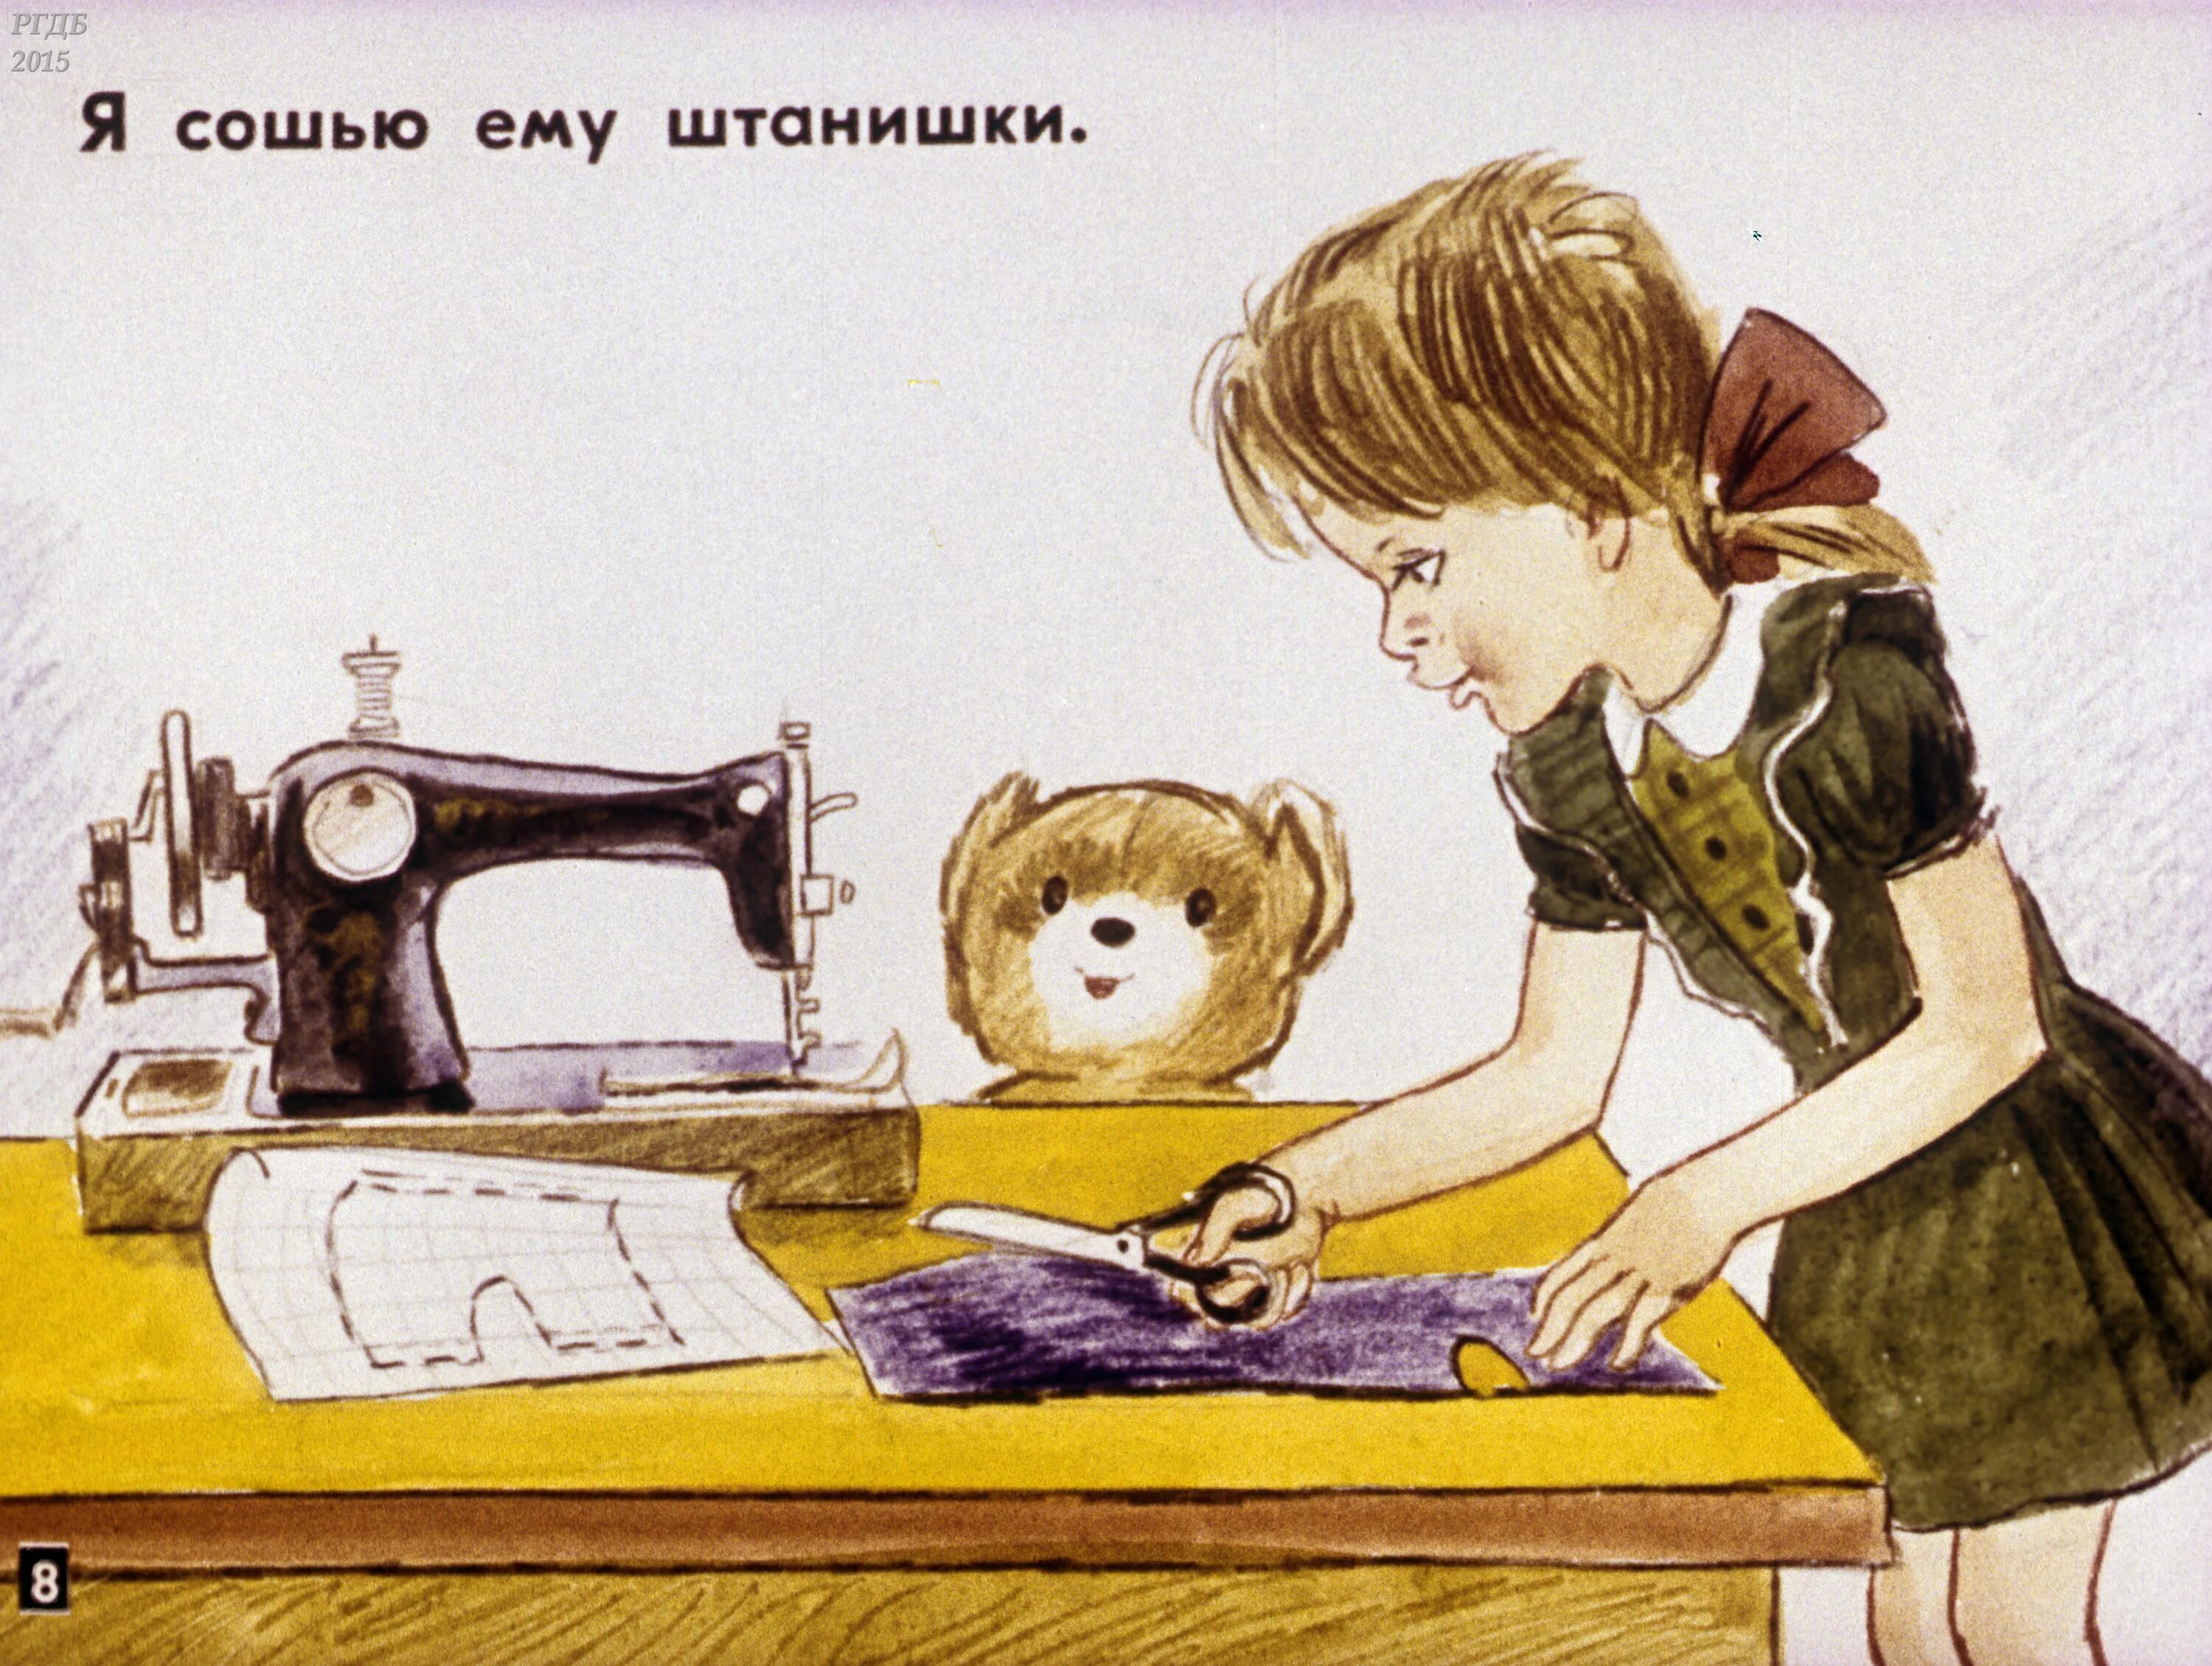 Иллюстрации к стихотворению мой мишка з.Александровой. Мой мишка Александрова иллюстрации. Иллюстрация к стихотворению мой мишка. Девочка шьет. Я сошью листа оригинал